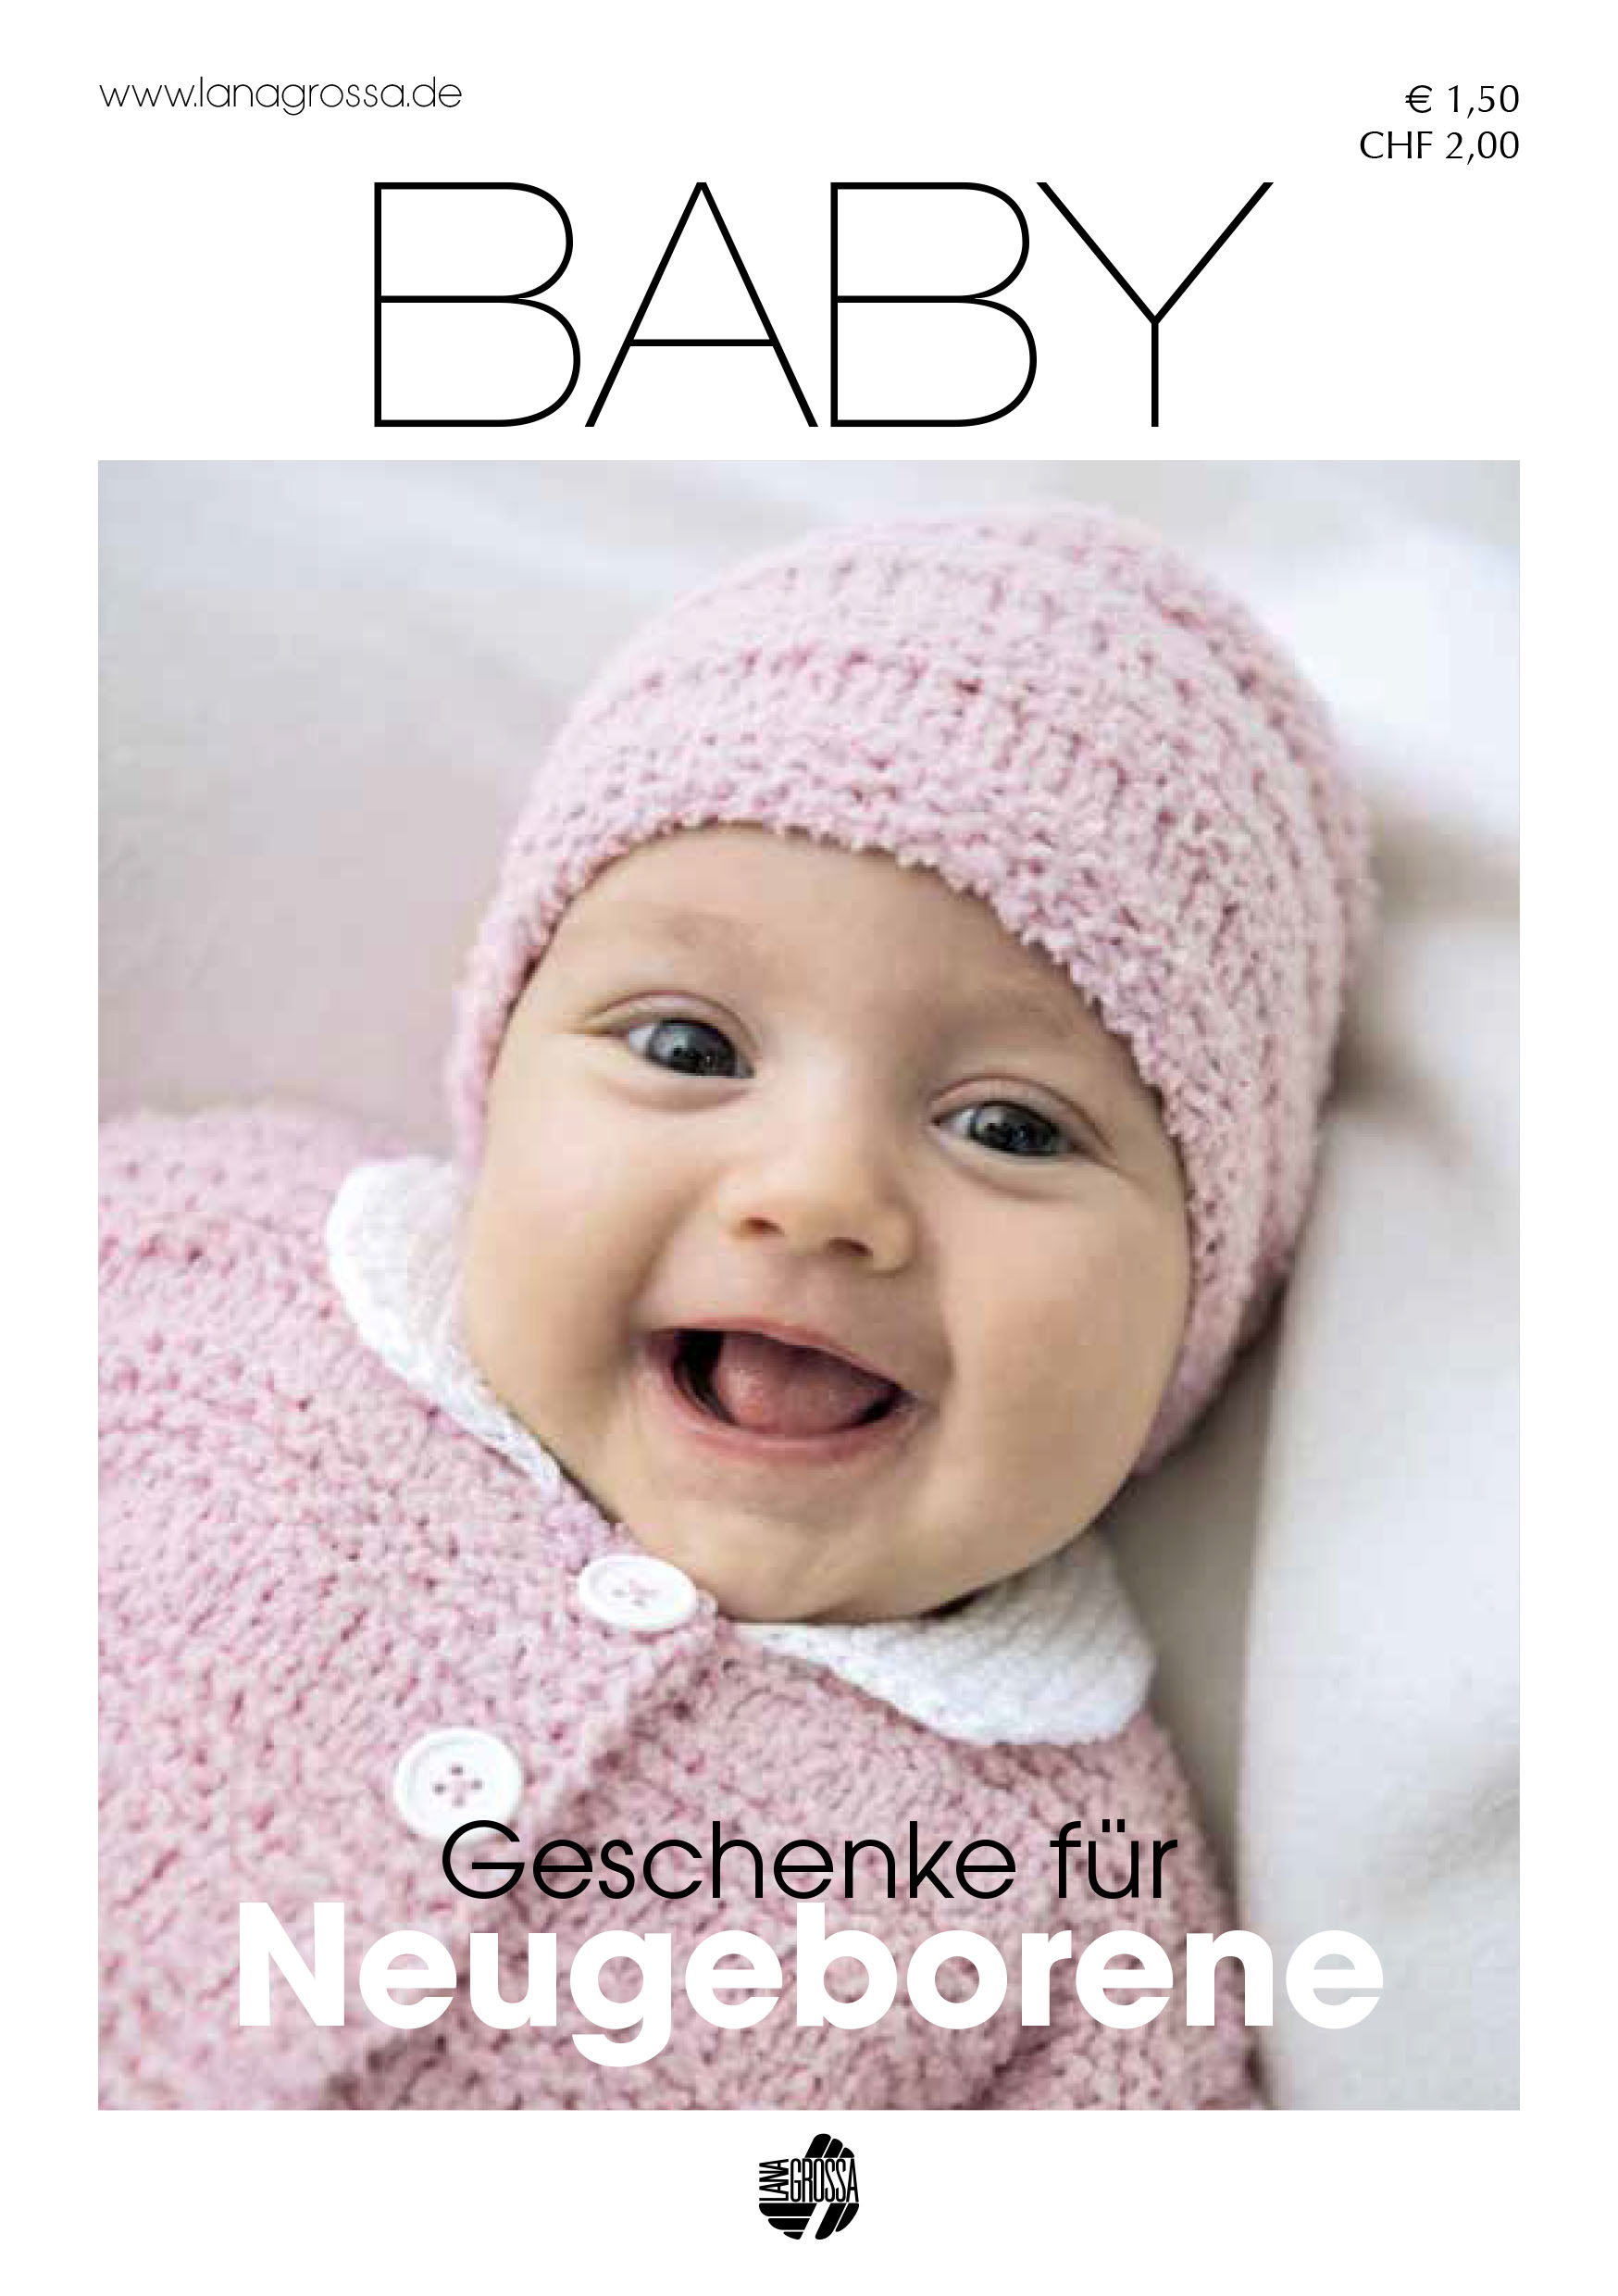 Geschenkideen Für Neugeborene
 BABY Geschenke für Neugeborene No 1 Lana Grossa BABY